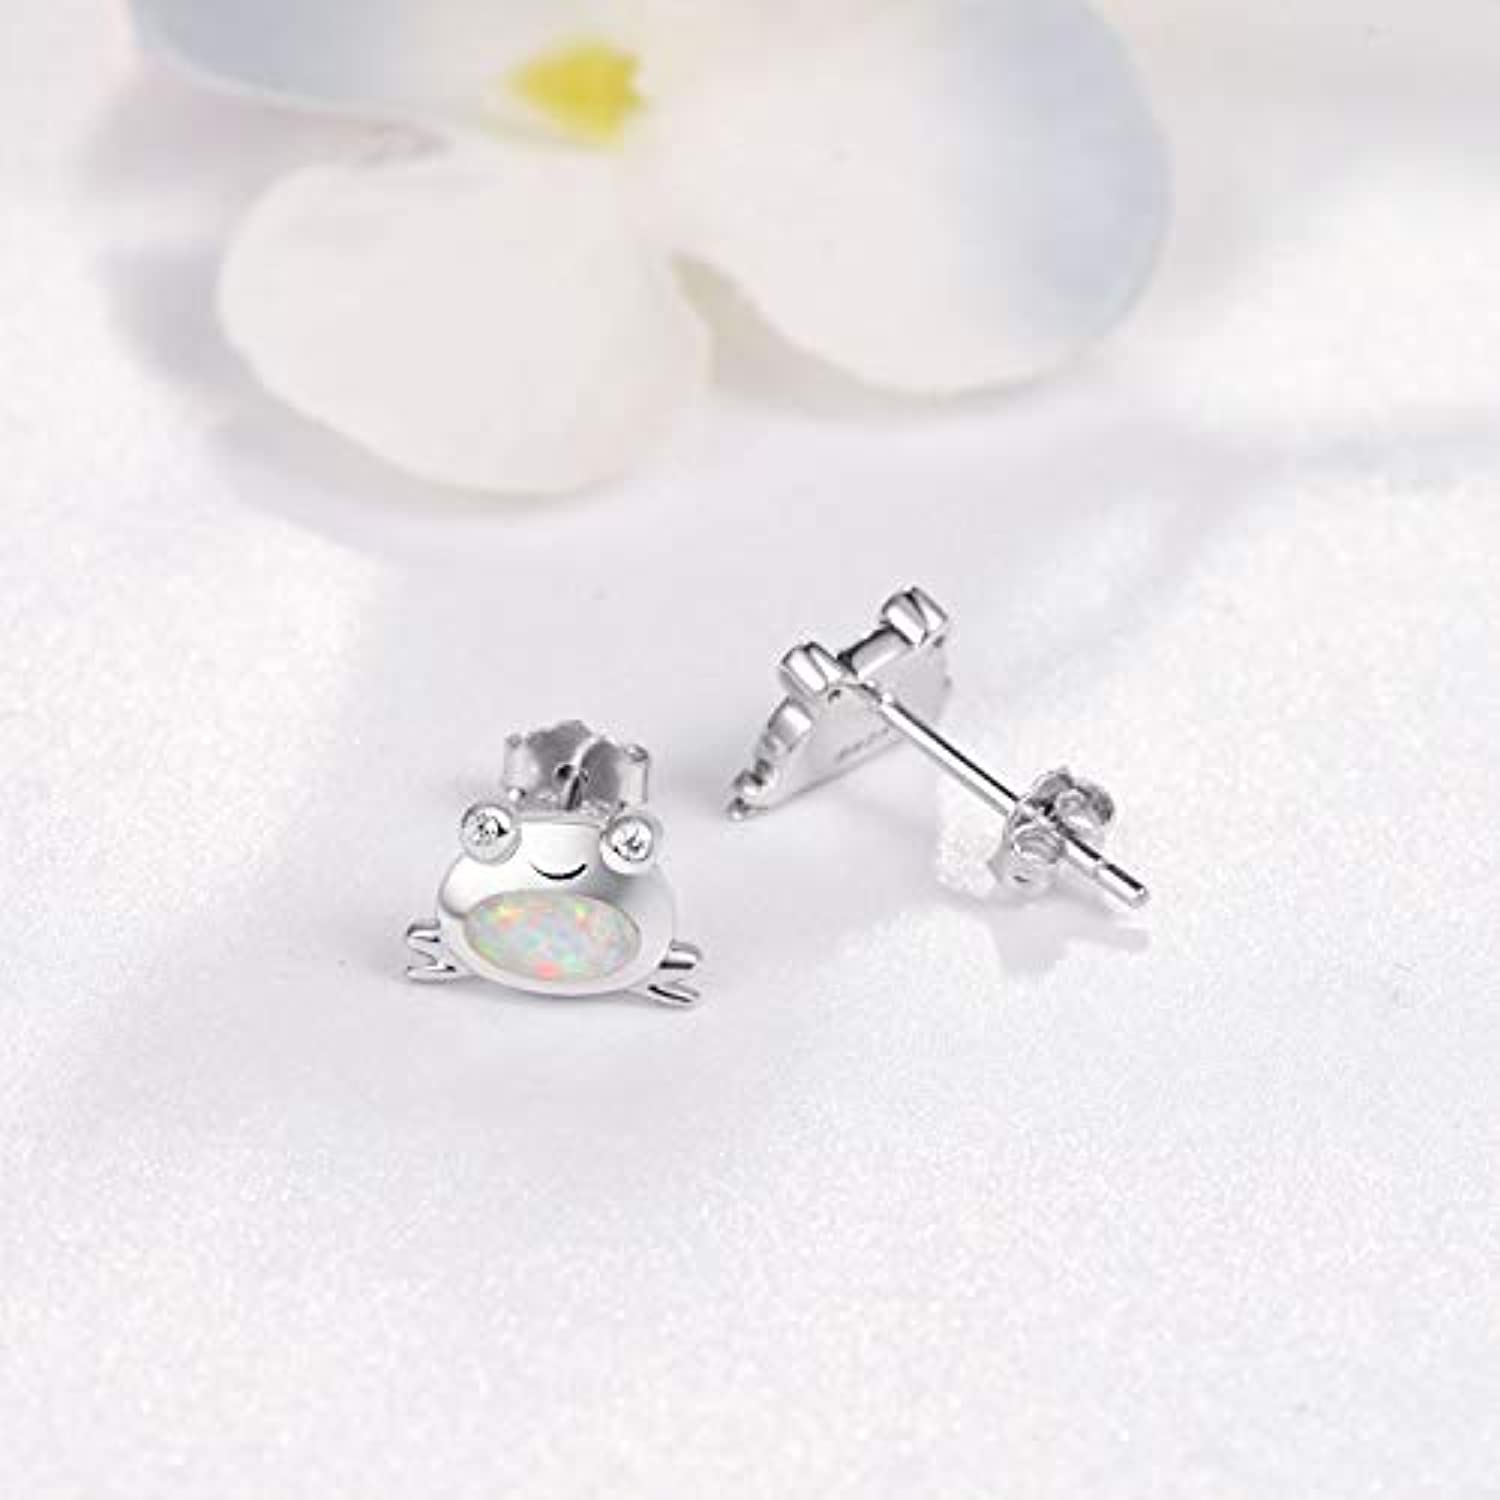 Frog Earring For Women 925 Sterling Silver Blue Opal Cubic Zirconia Animal Small Hypoallergenic Earrings